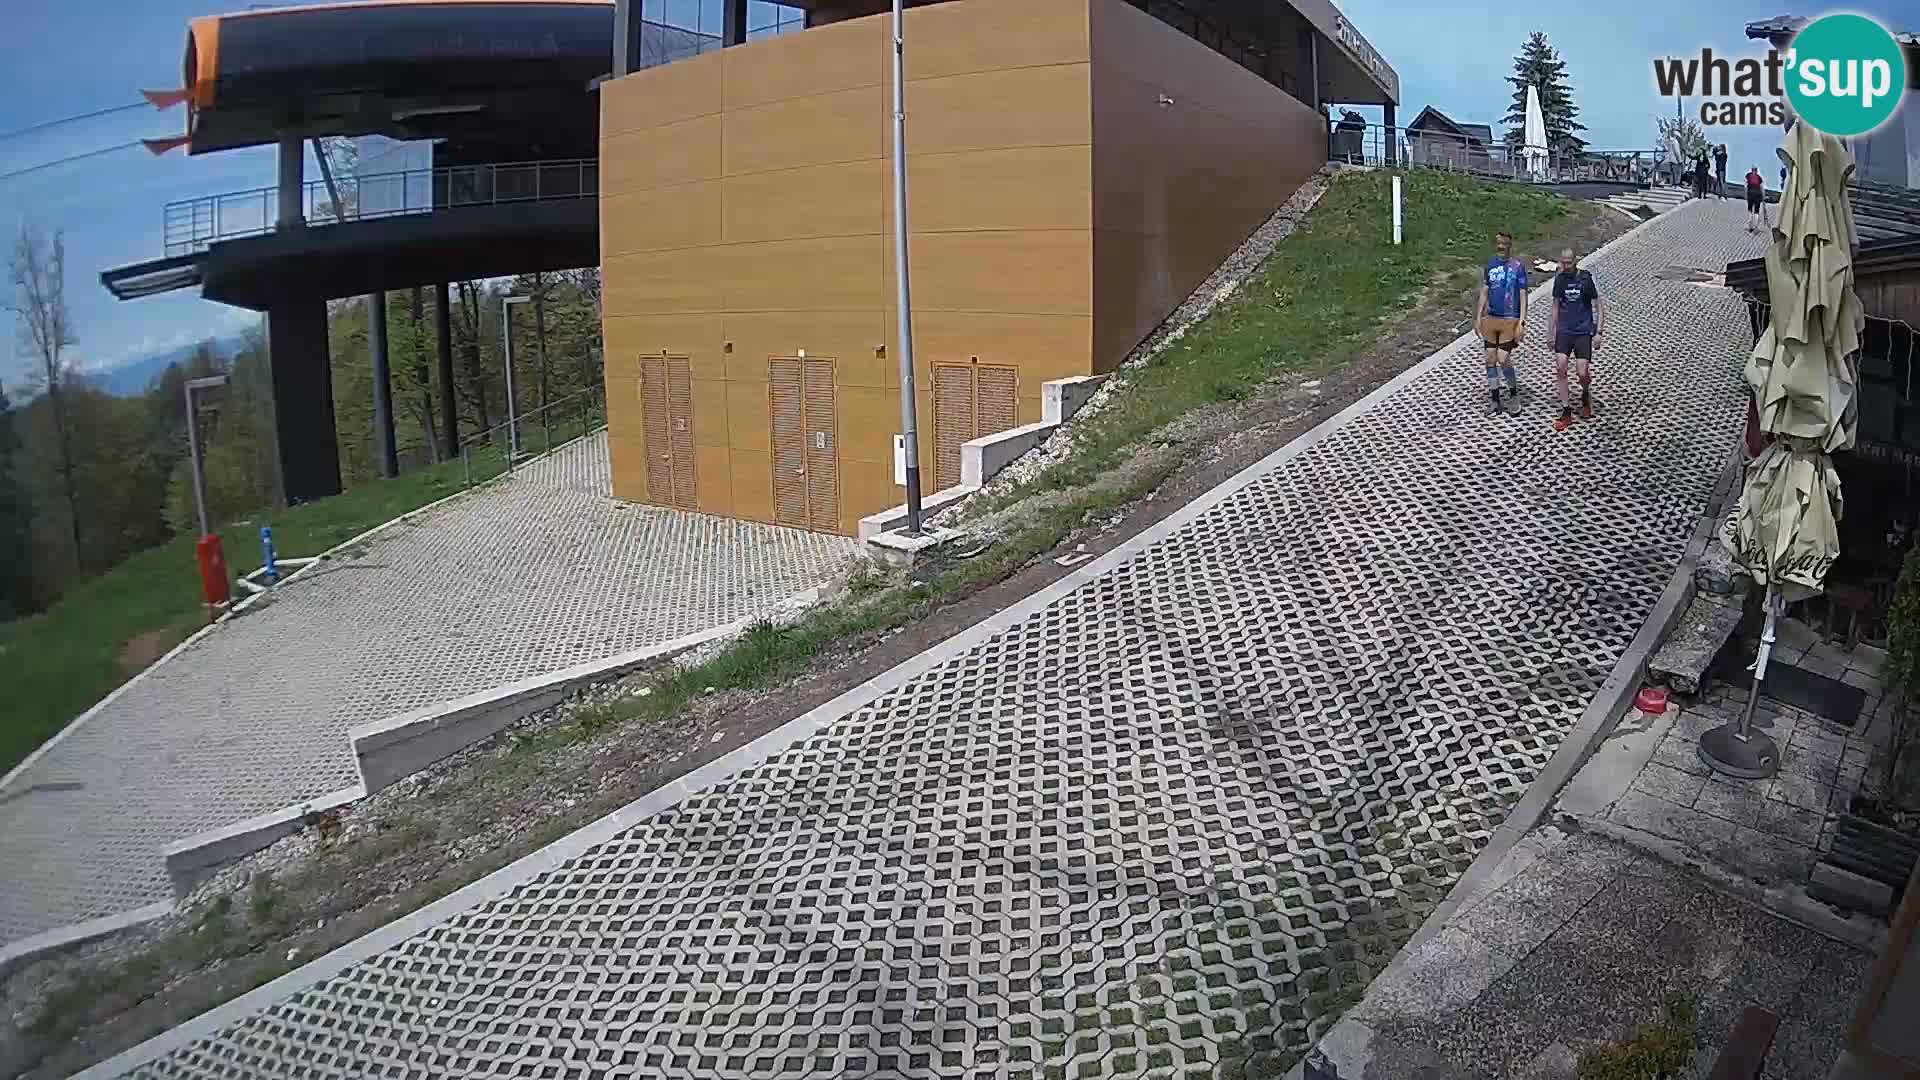 Sljeme – ski center near Zagreb